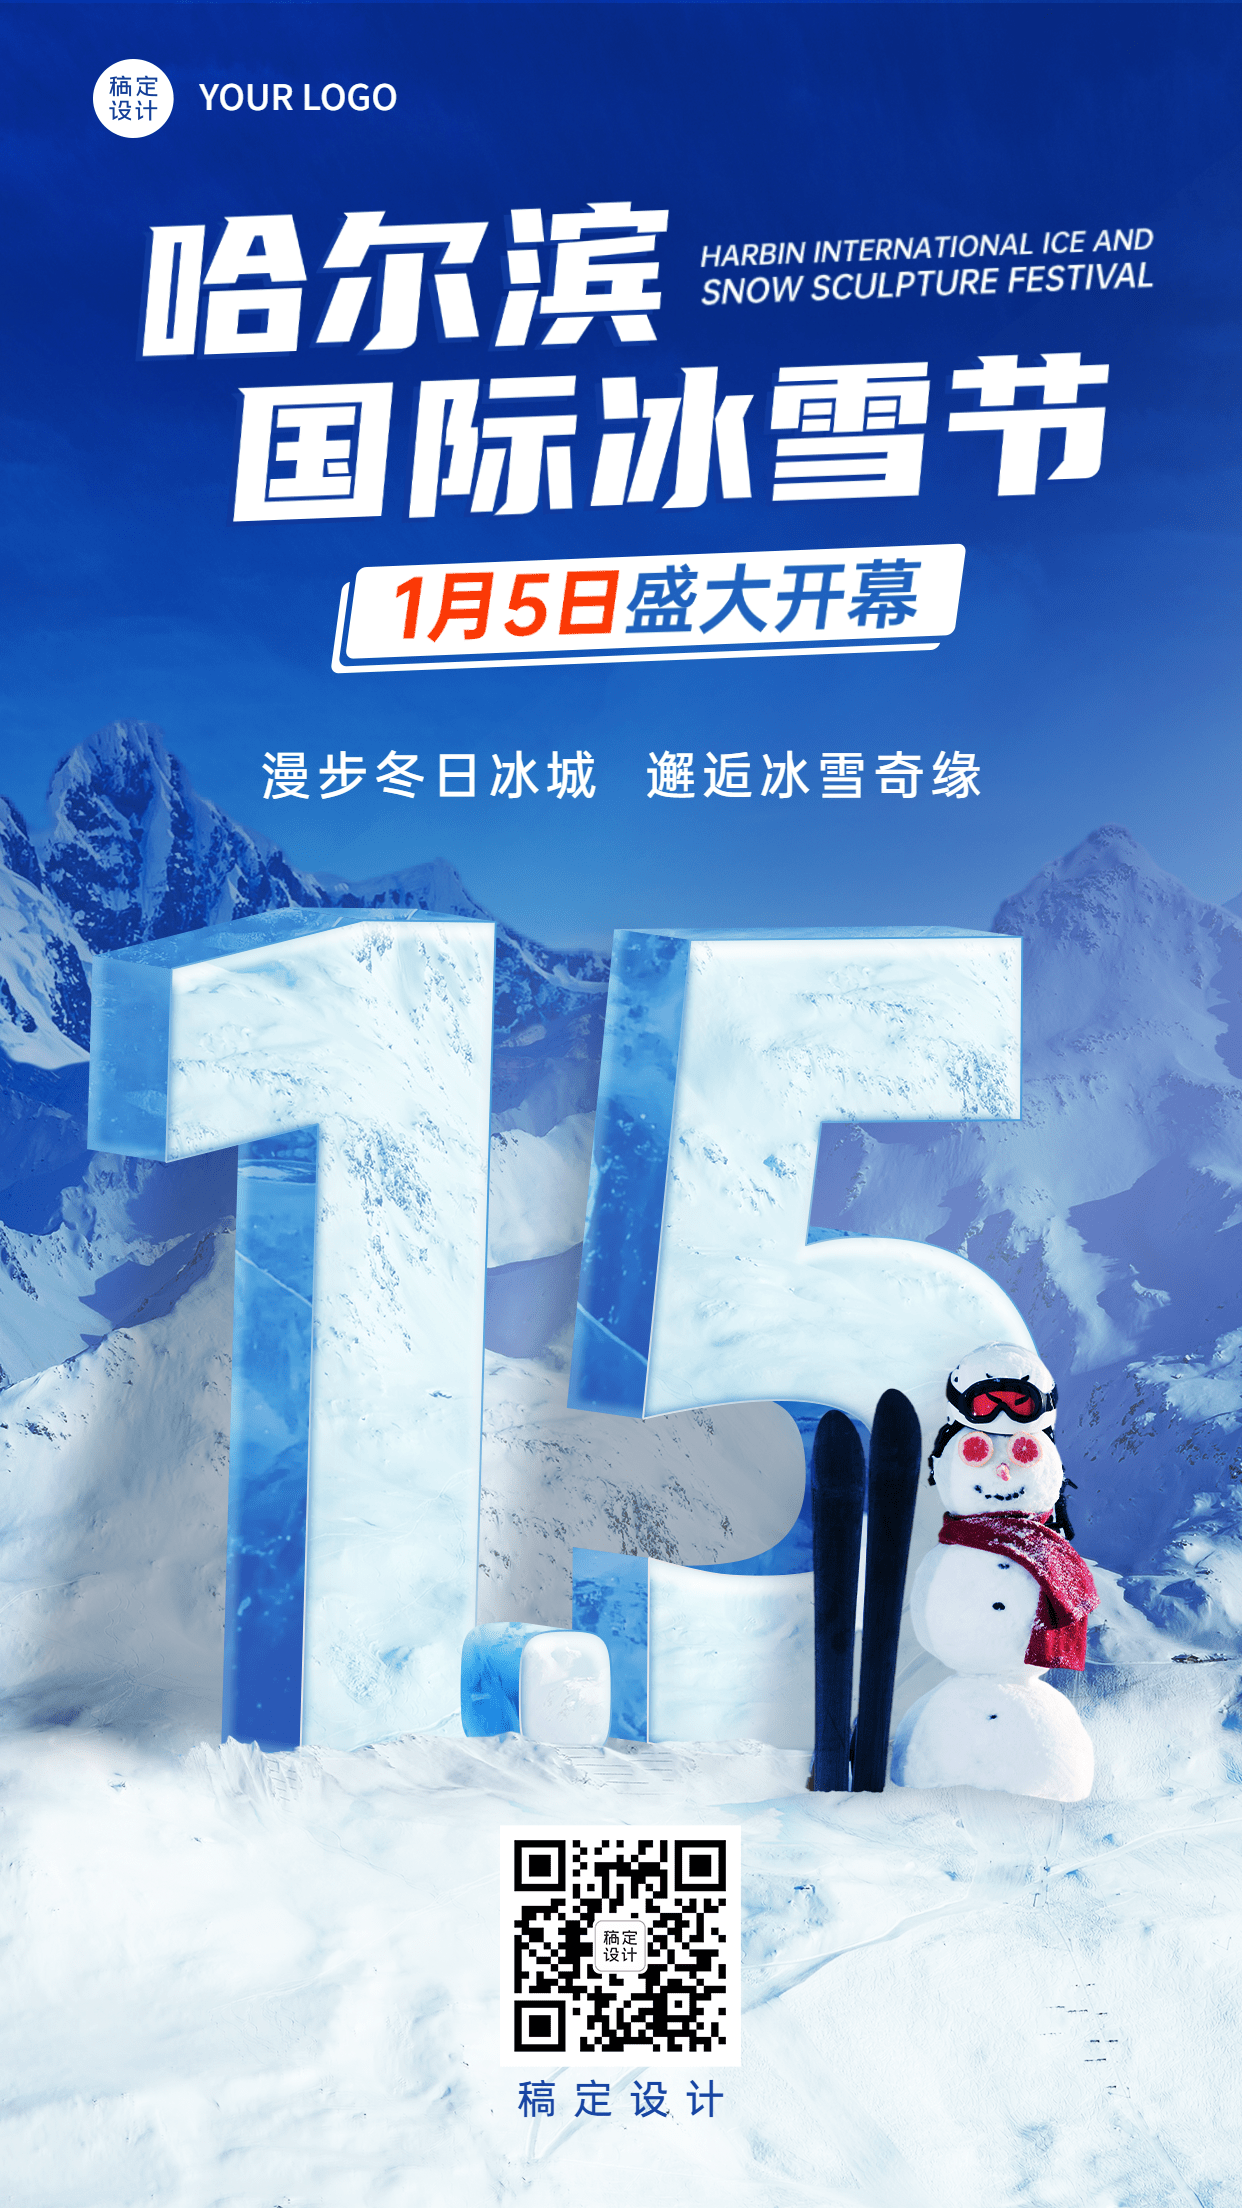 冬季冰雪旅游哈尔滨国际冰雪节活动宣传创意实景海报